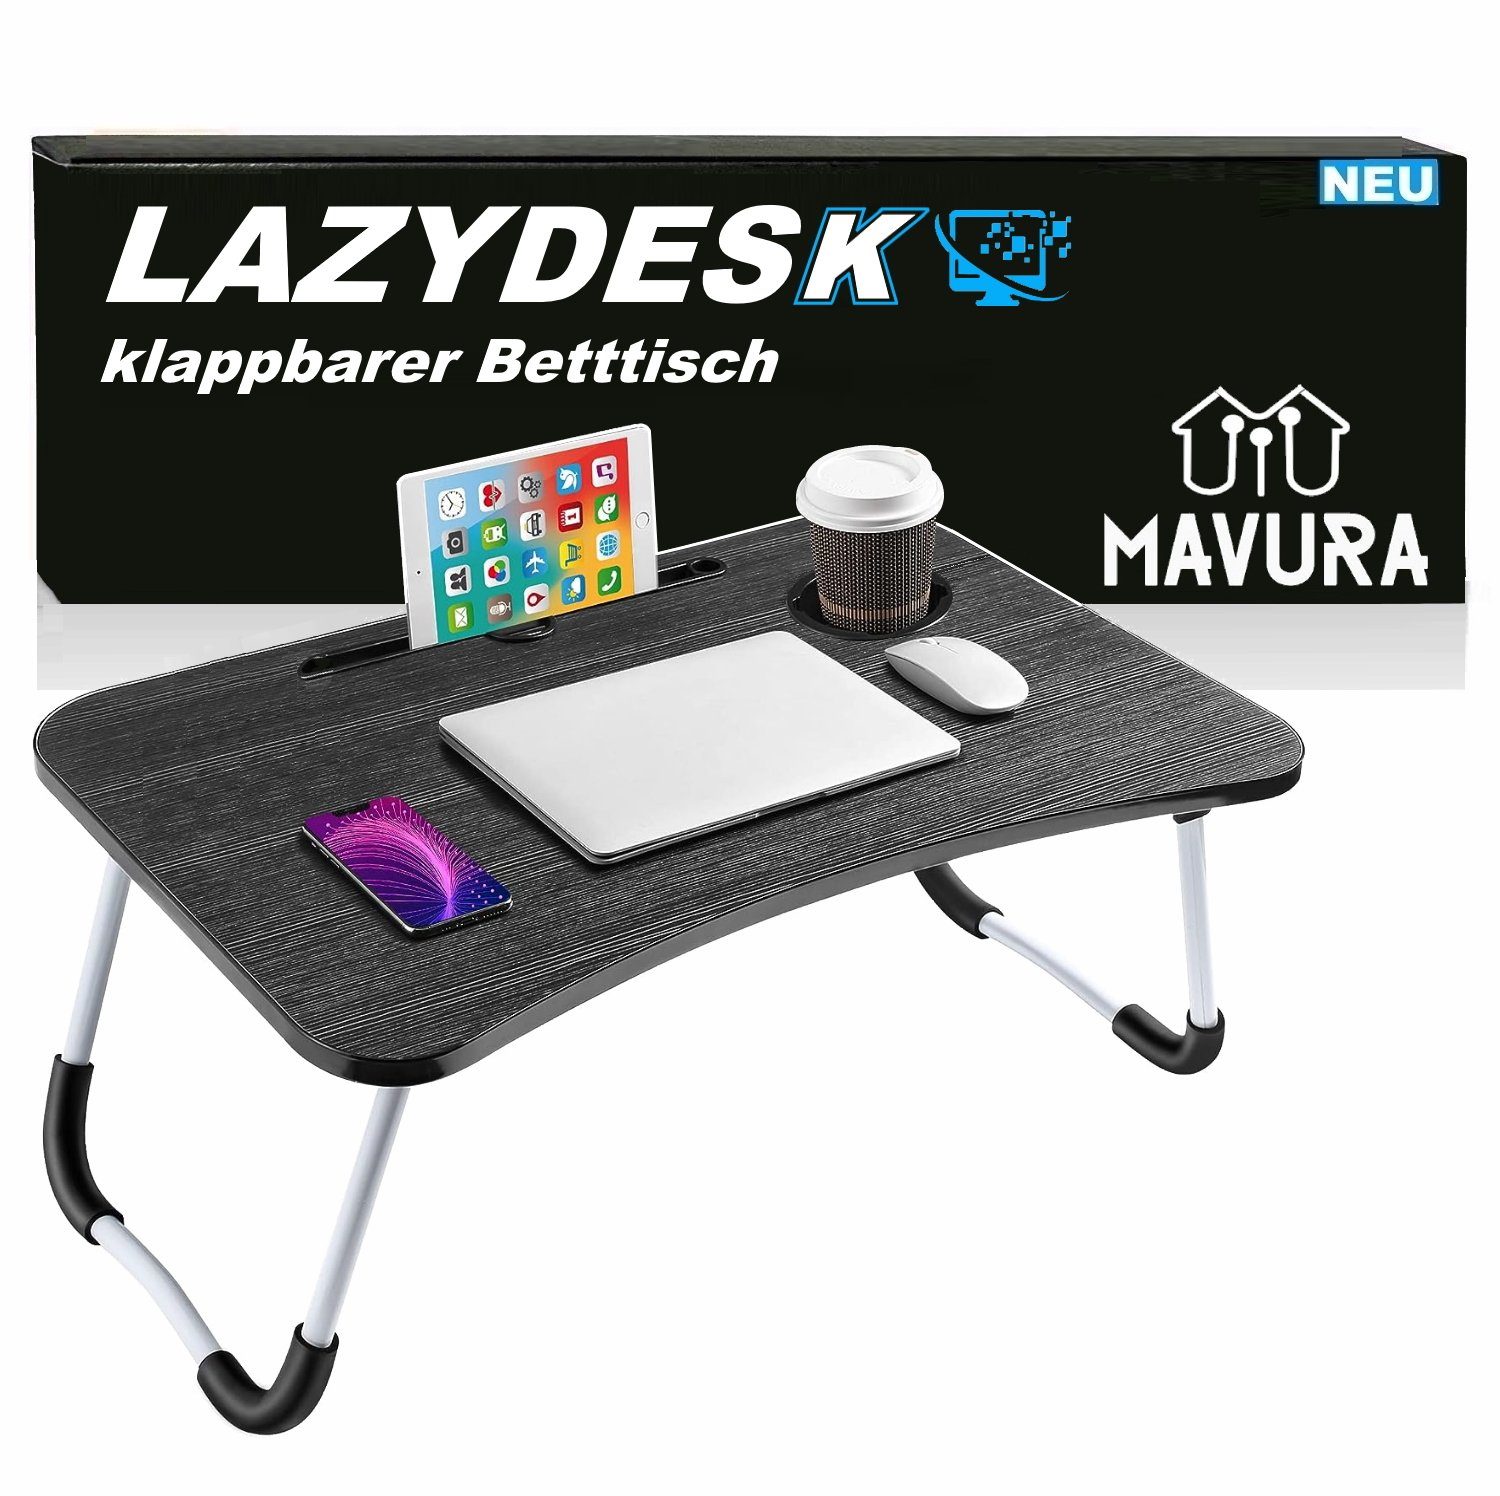 MAVURA Laptoptisch LAZYDESK Klappbarer Betttisch Notebooktisch Notebook, Laptop Betttablett Bett Tablett Tisch PC Ständer